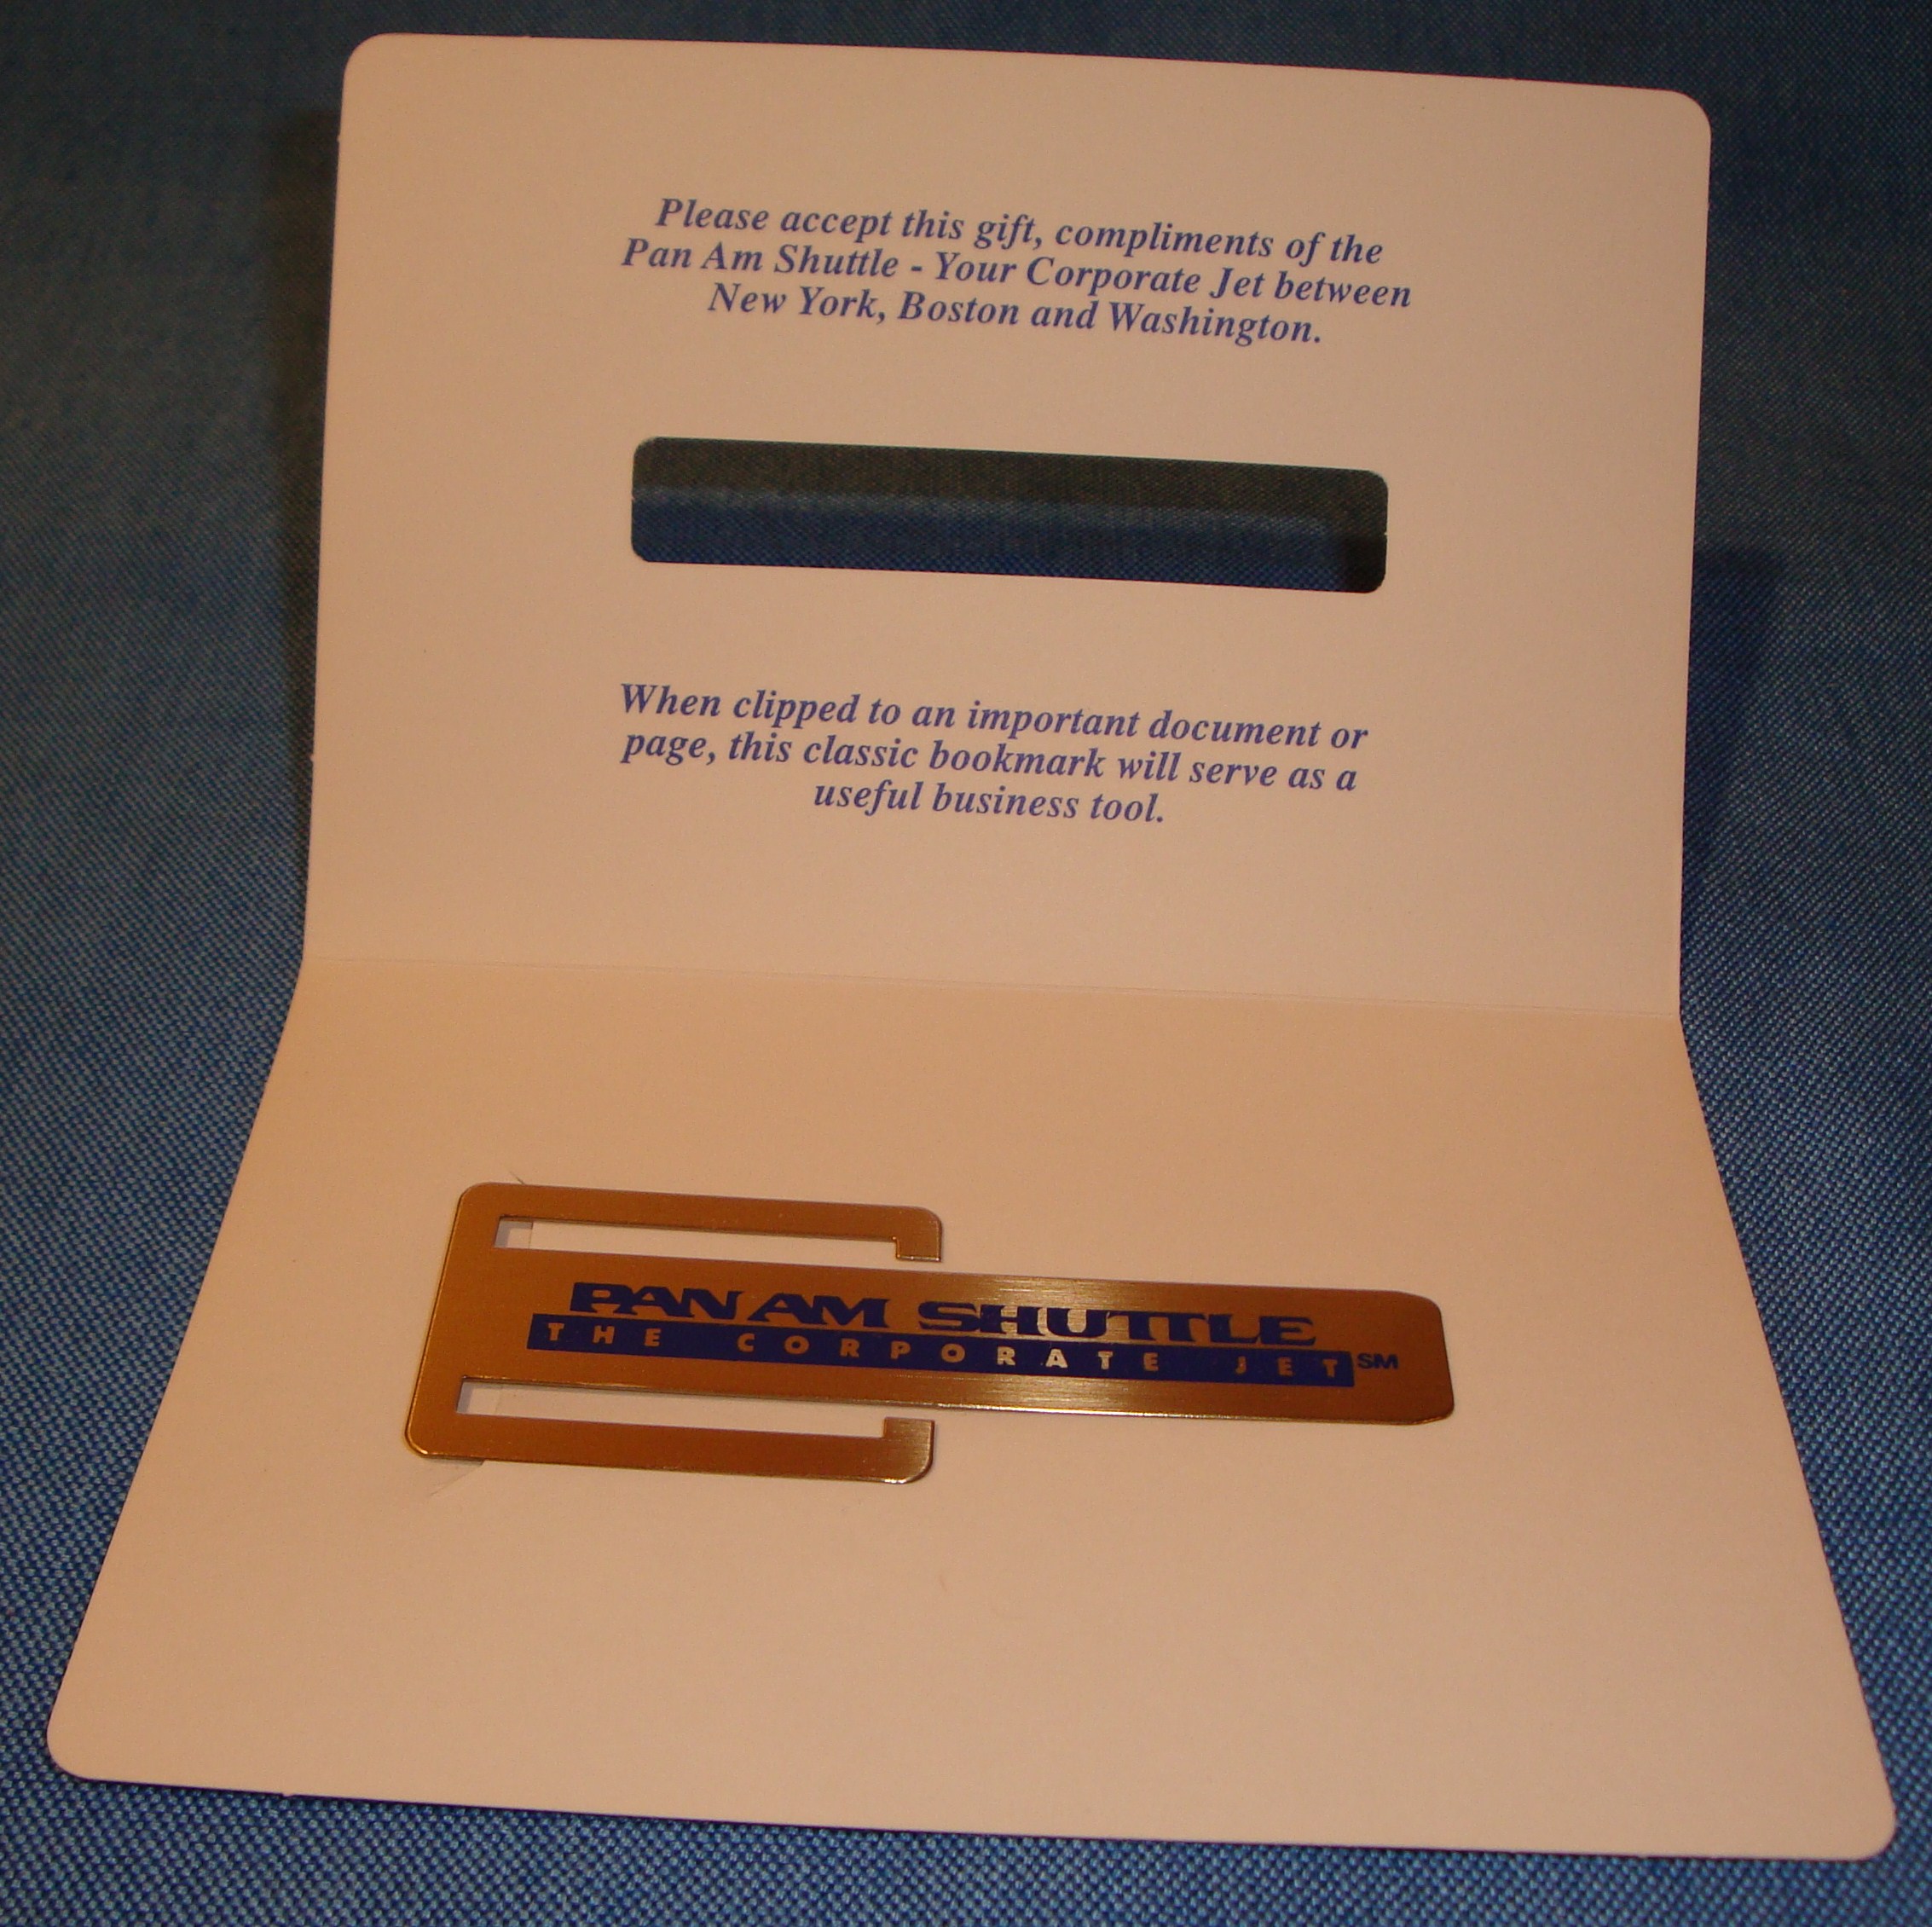 1980s Shuttle bookmark.jpg